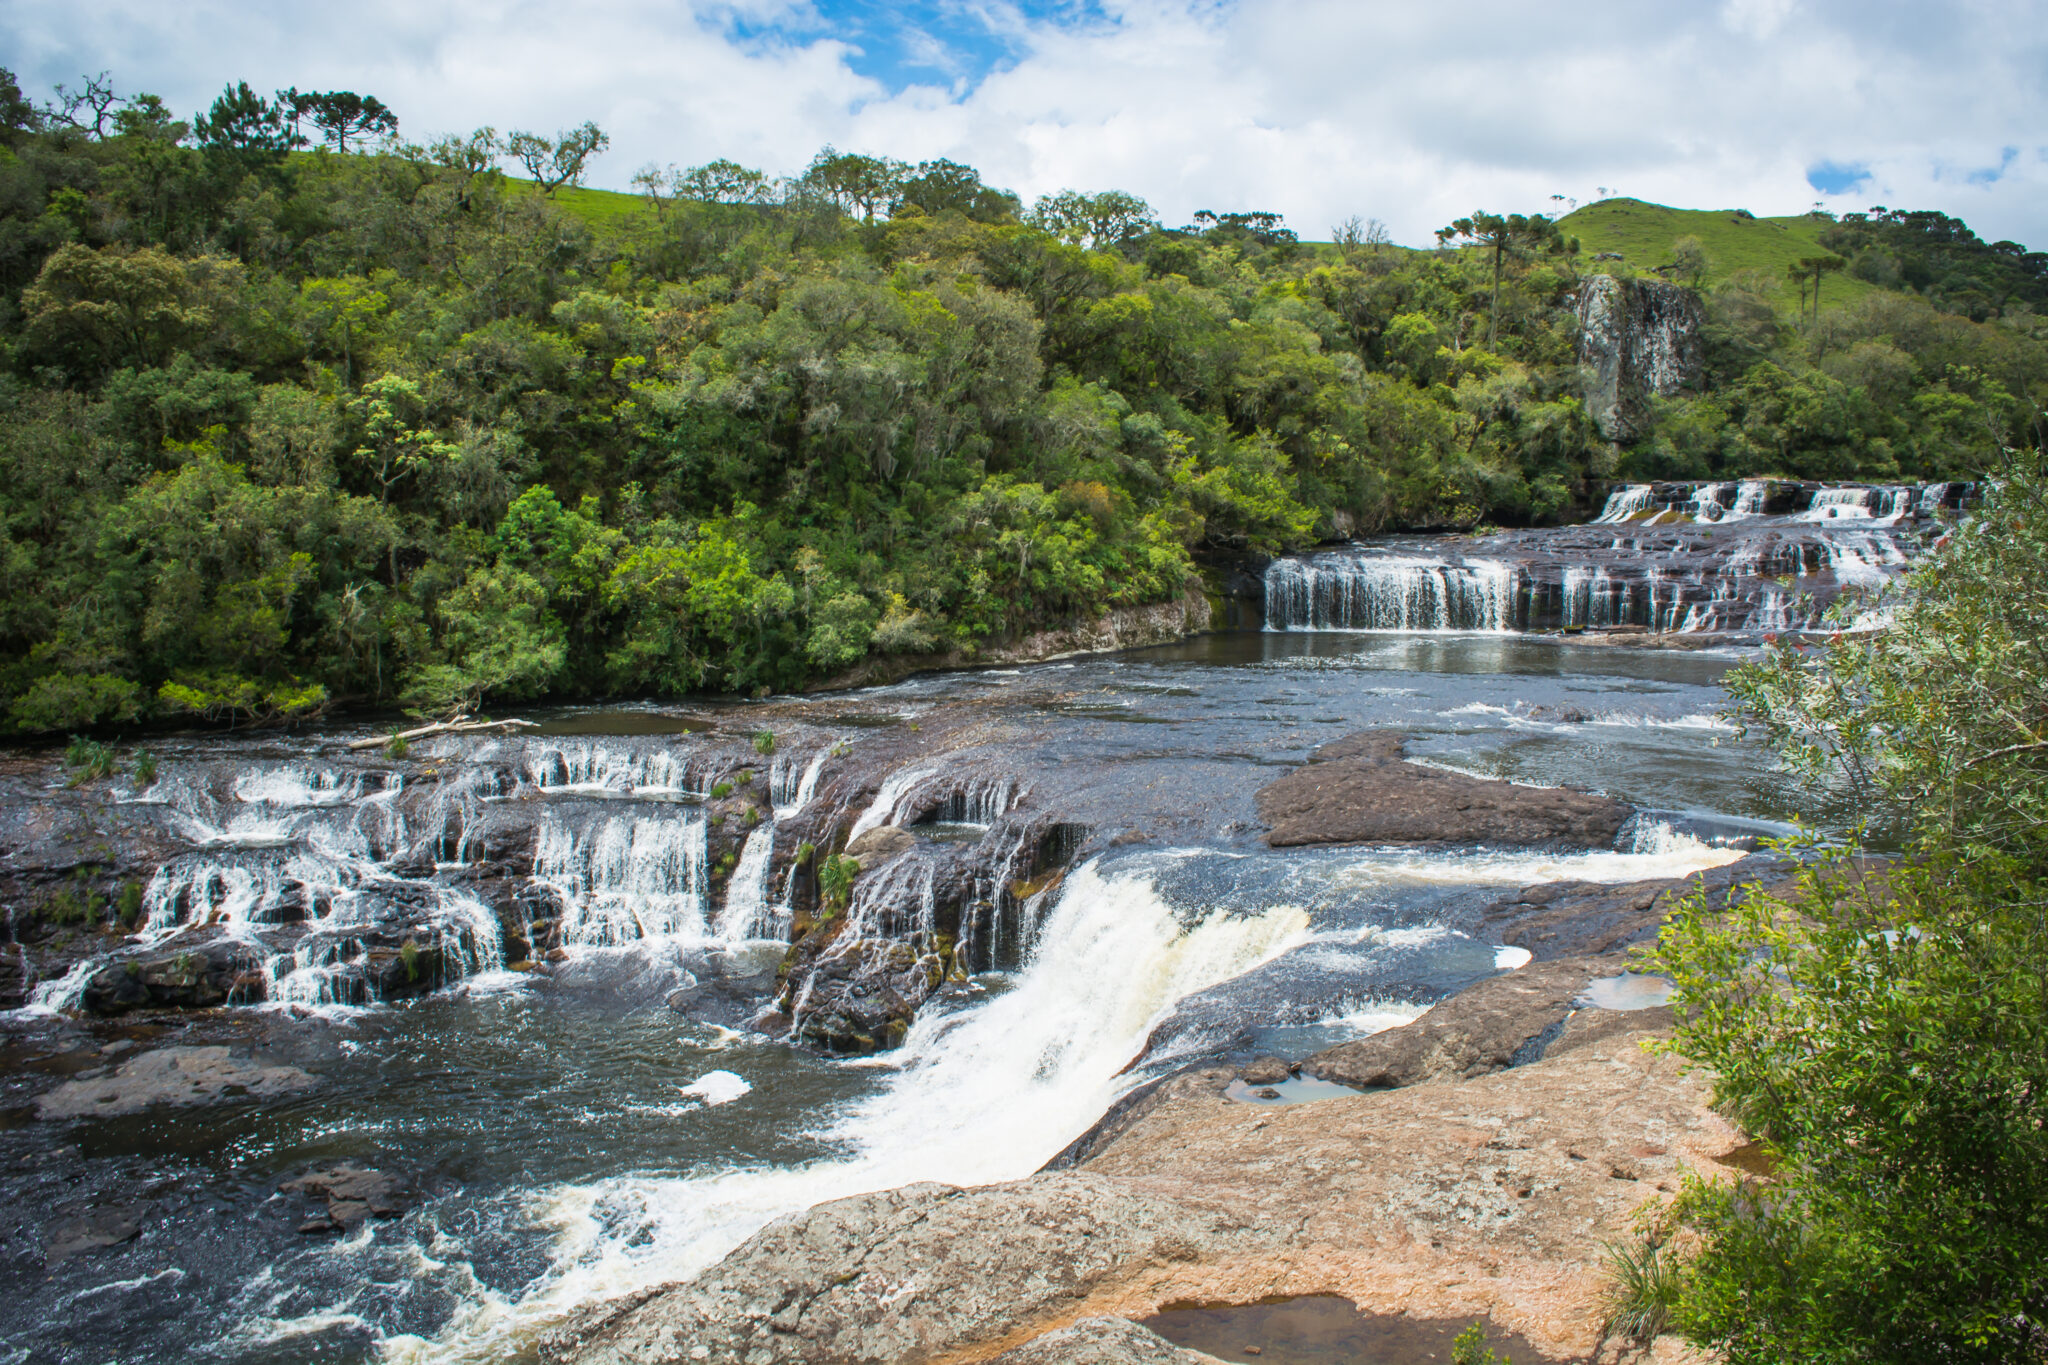 DSC0159 scaled - Grutão Ecoparque - Ecoturismo com cachoeira em Caxias do Sul